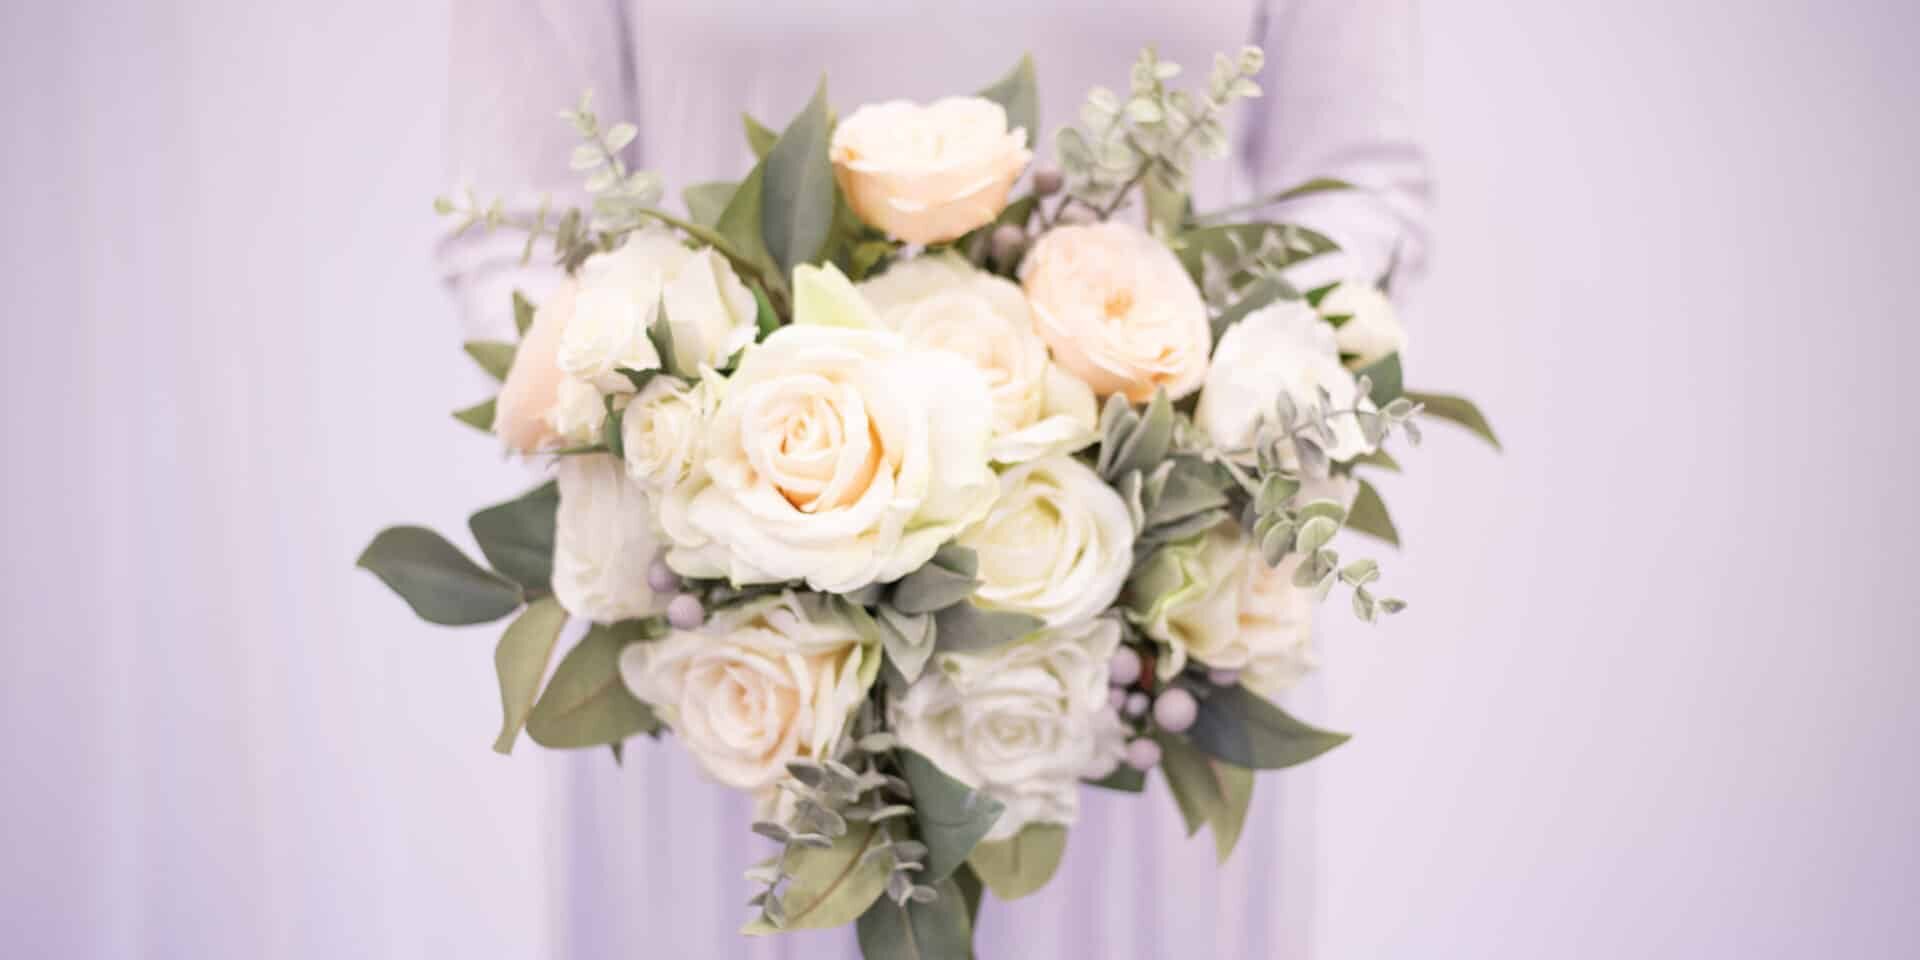 Silk Wedding Flower Bouquet Rental